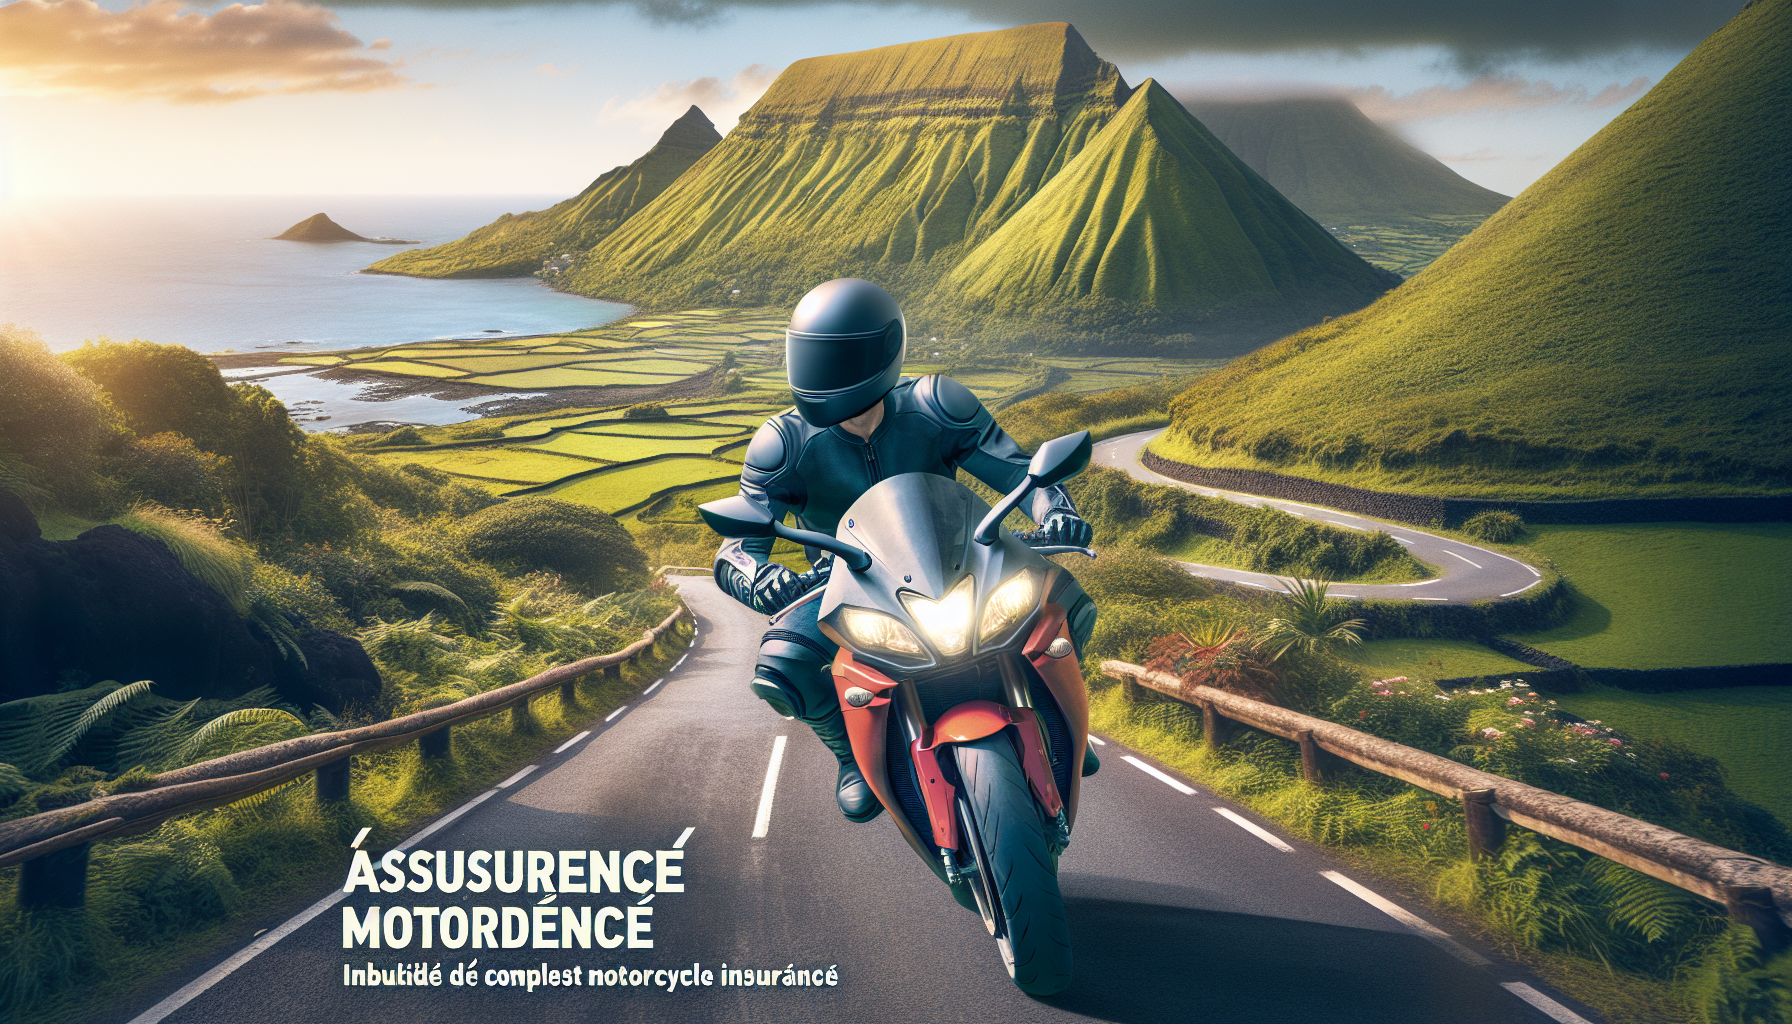 protégez votre moto à la réunion avec une assurance tous risques adaptée à vos besoins. découvrez les garanties et assurances pour votre moto sur l'île.